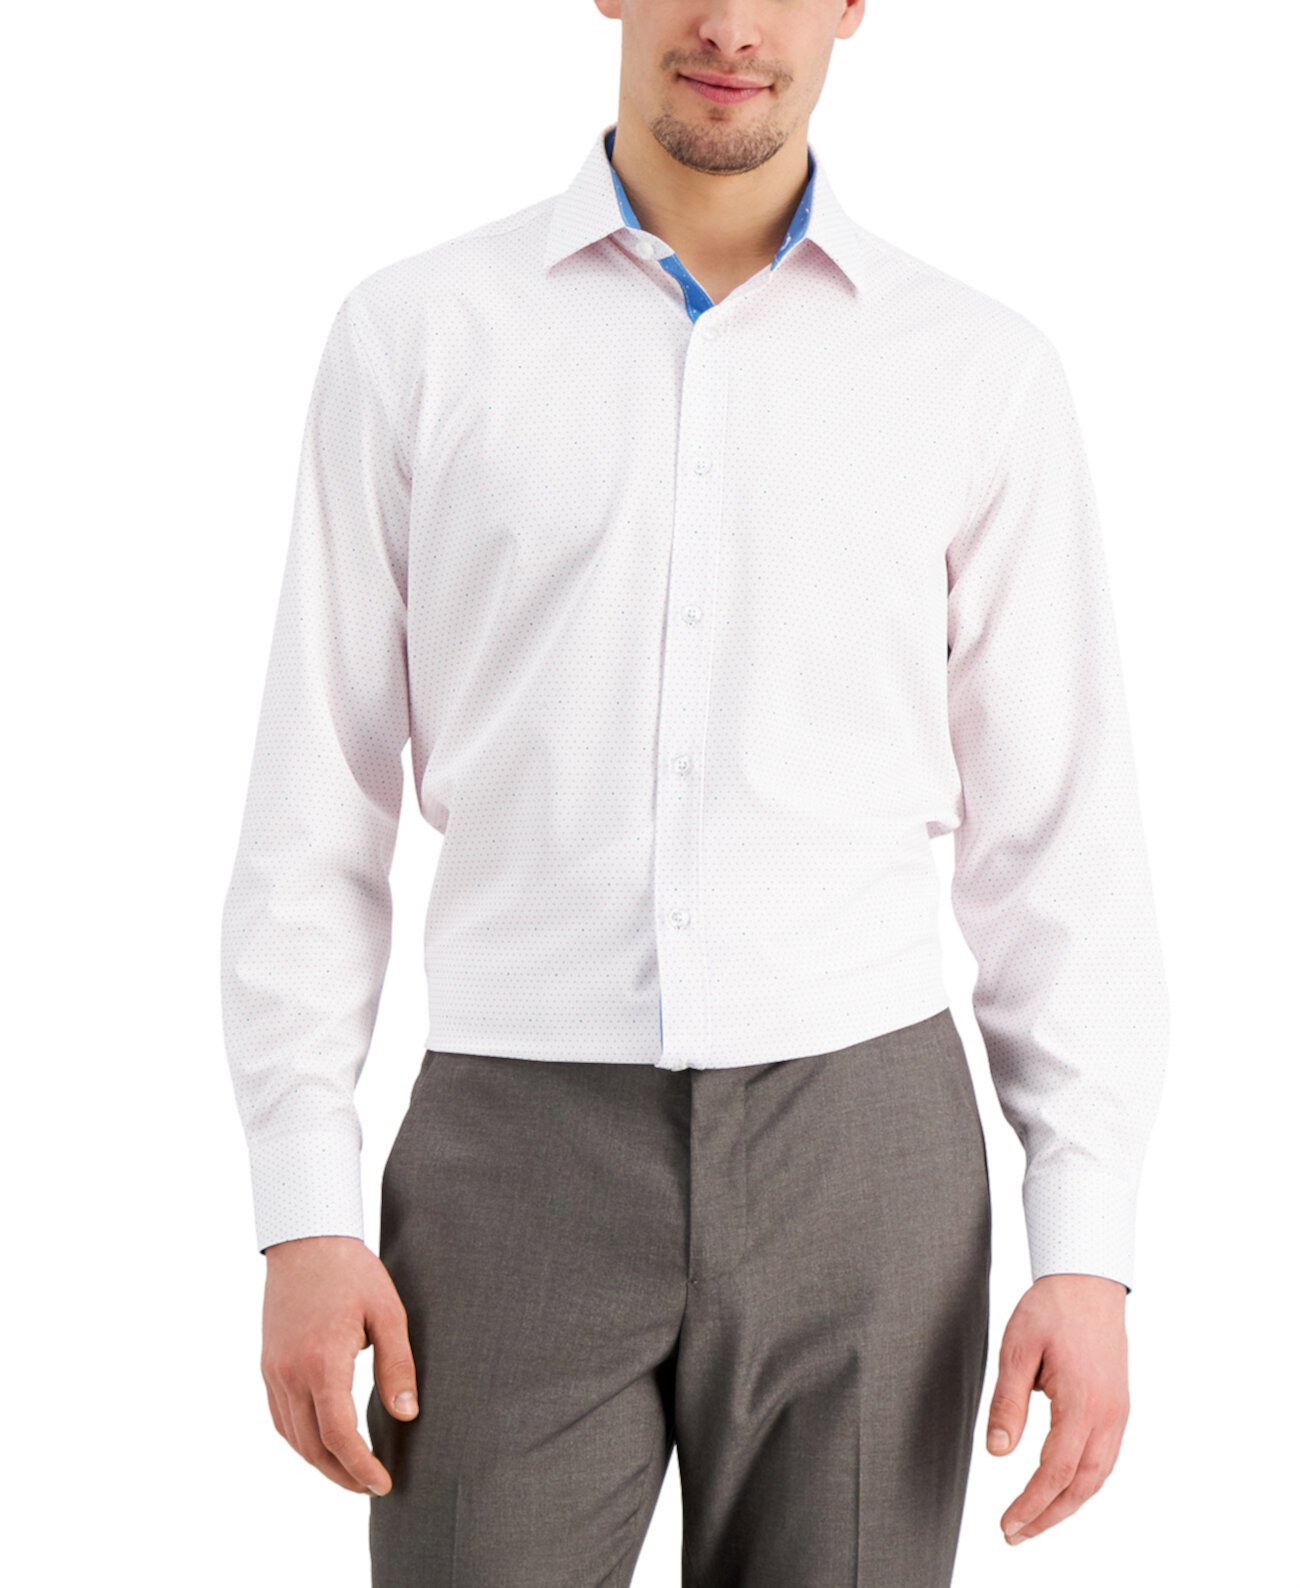 Мужская приталенная классическая рубашка с эластичным точечным принтом без железа и плиссированной маской для лица Tallia